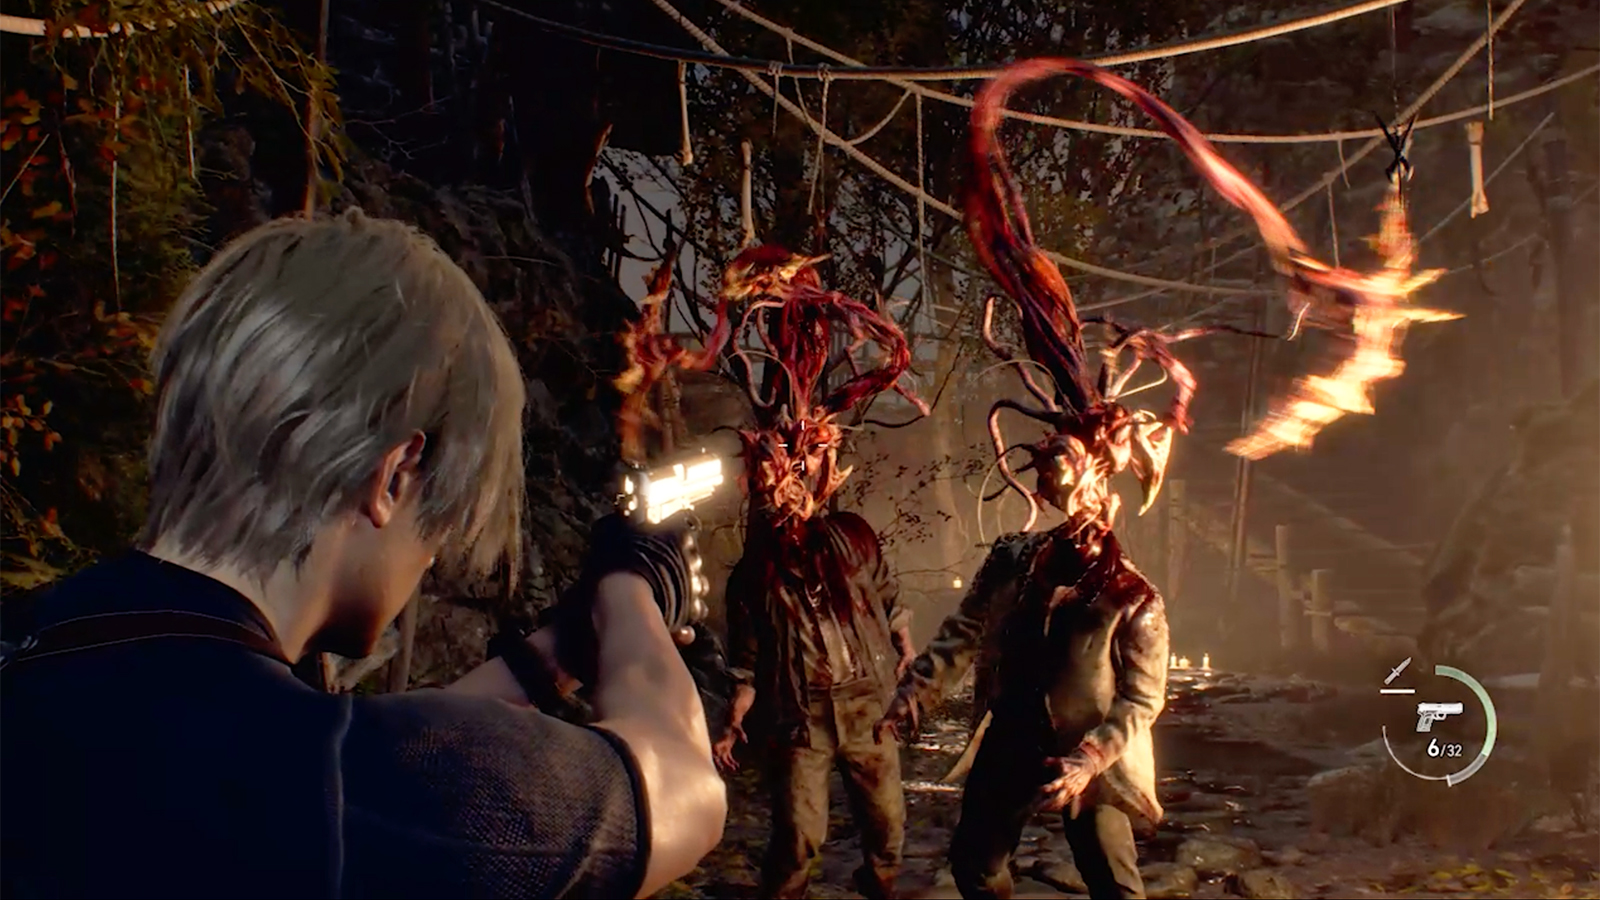 RESIDENT EVIL 6 PS5 Full Game Walkthrough - No Commentary Ada Wong (Resident  Evil 6 Full Game) 